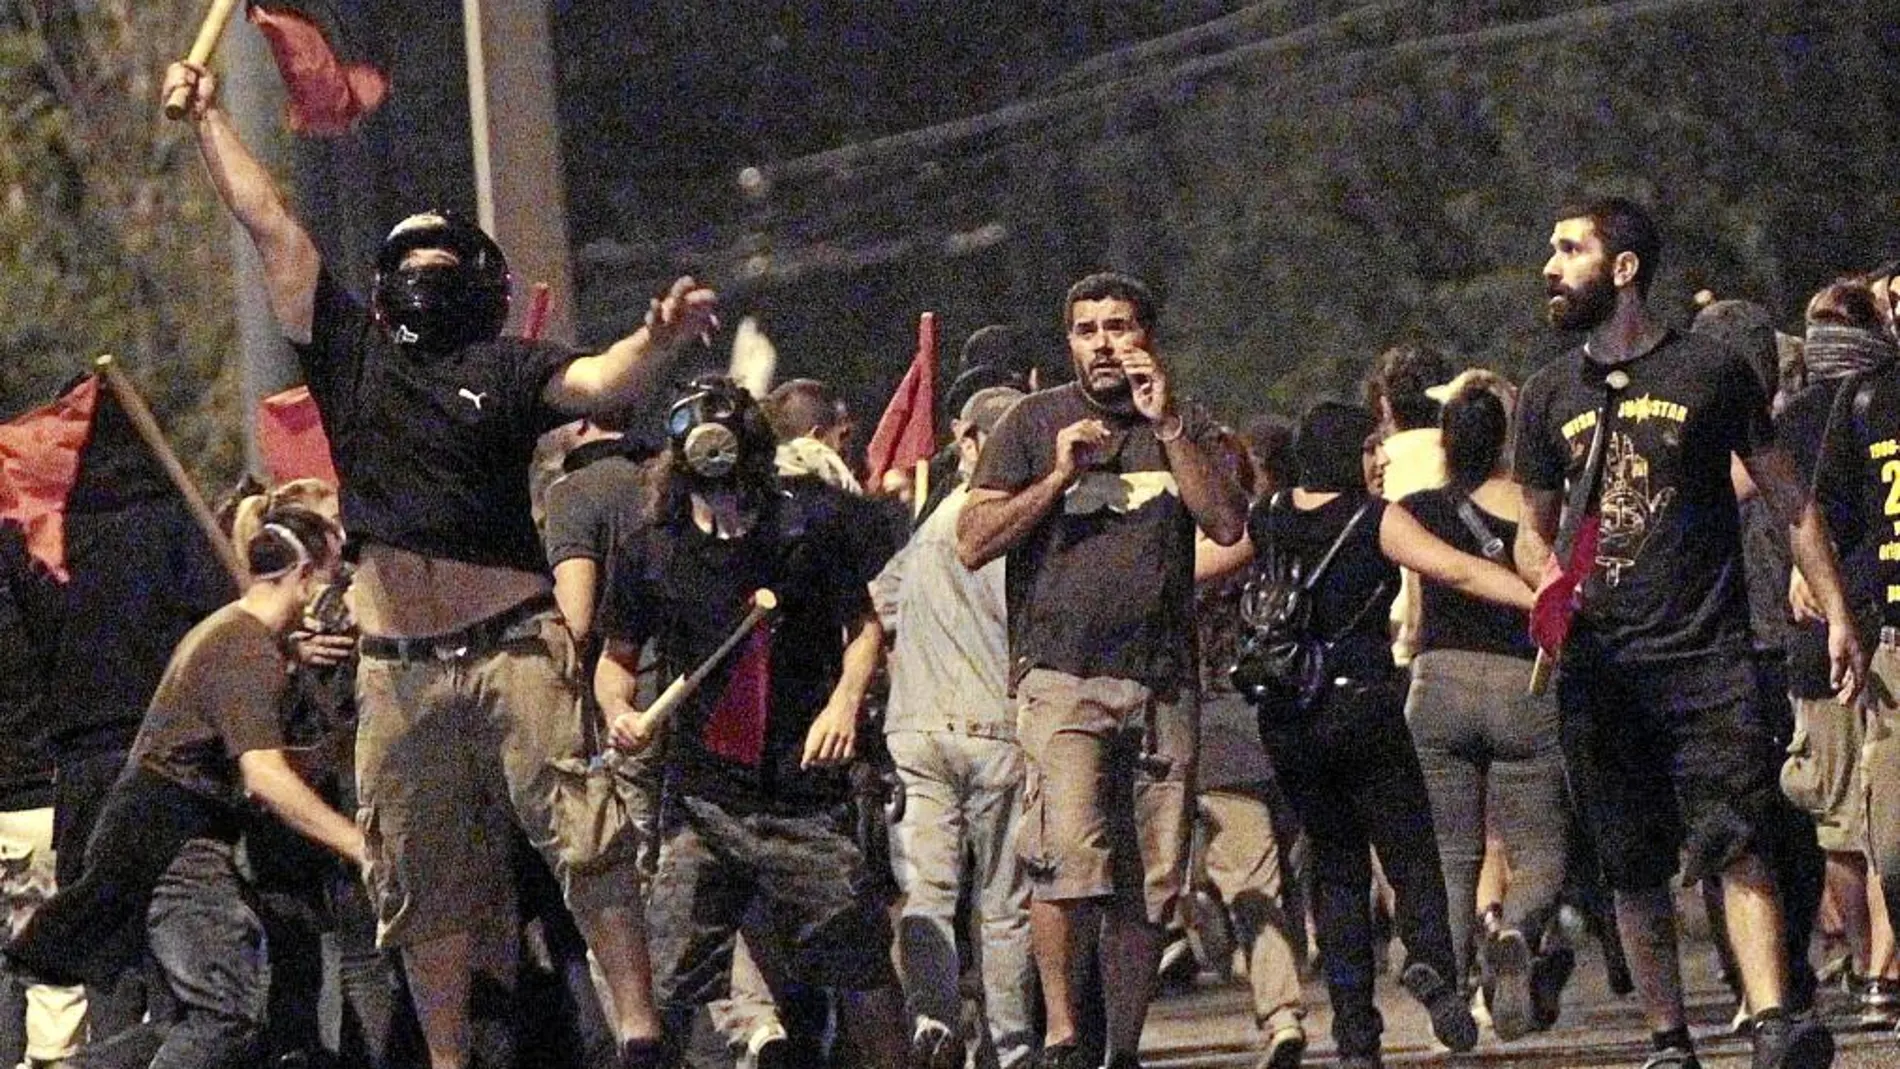 La Policía carga contra los manifestantes, ayer, en Atenas